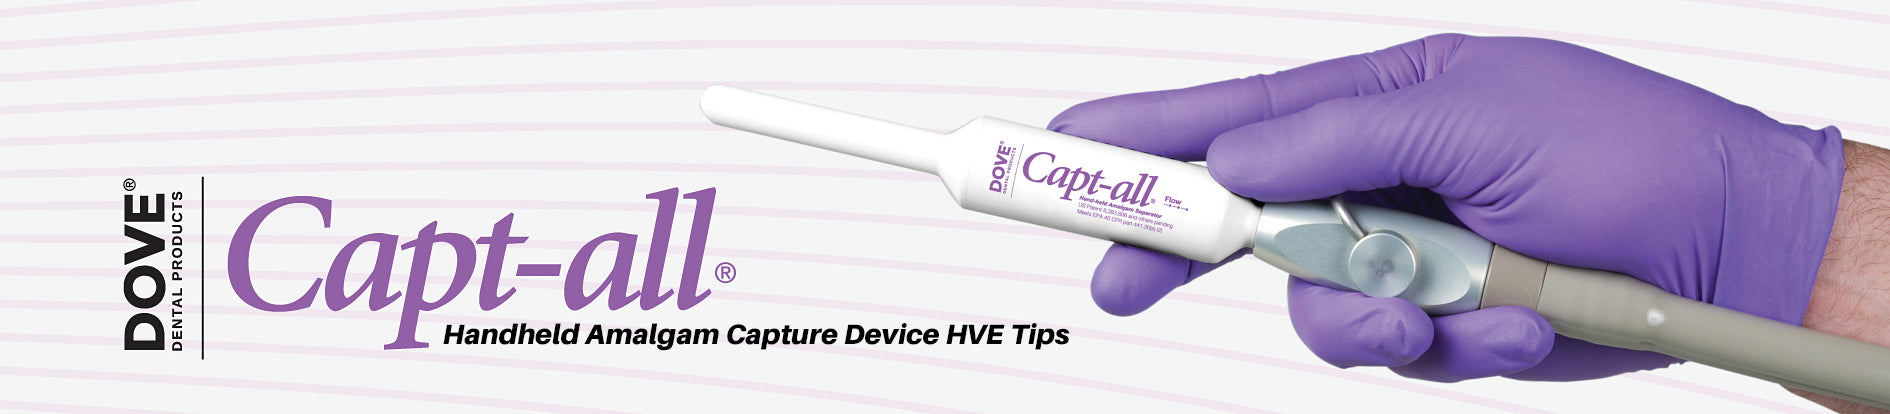 Cap-tall Amalgam Capture Device